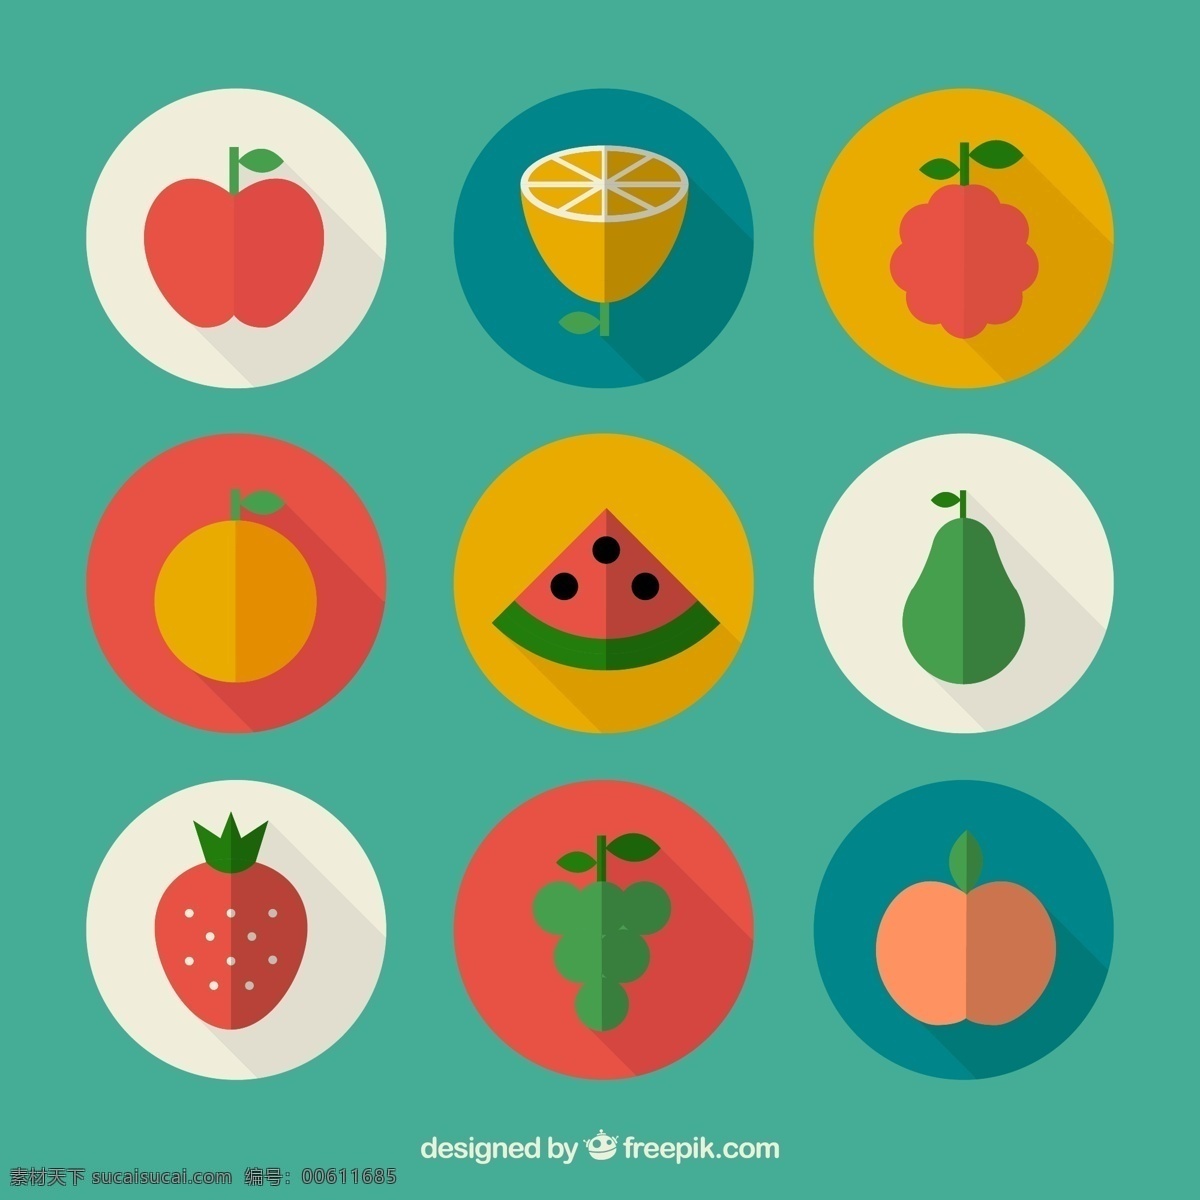 水果矢量 ui 图标 水果 苹果 西瓜 生活百科 餐饮美食